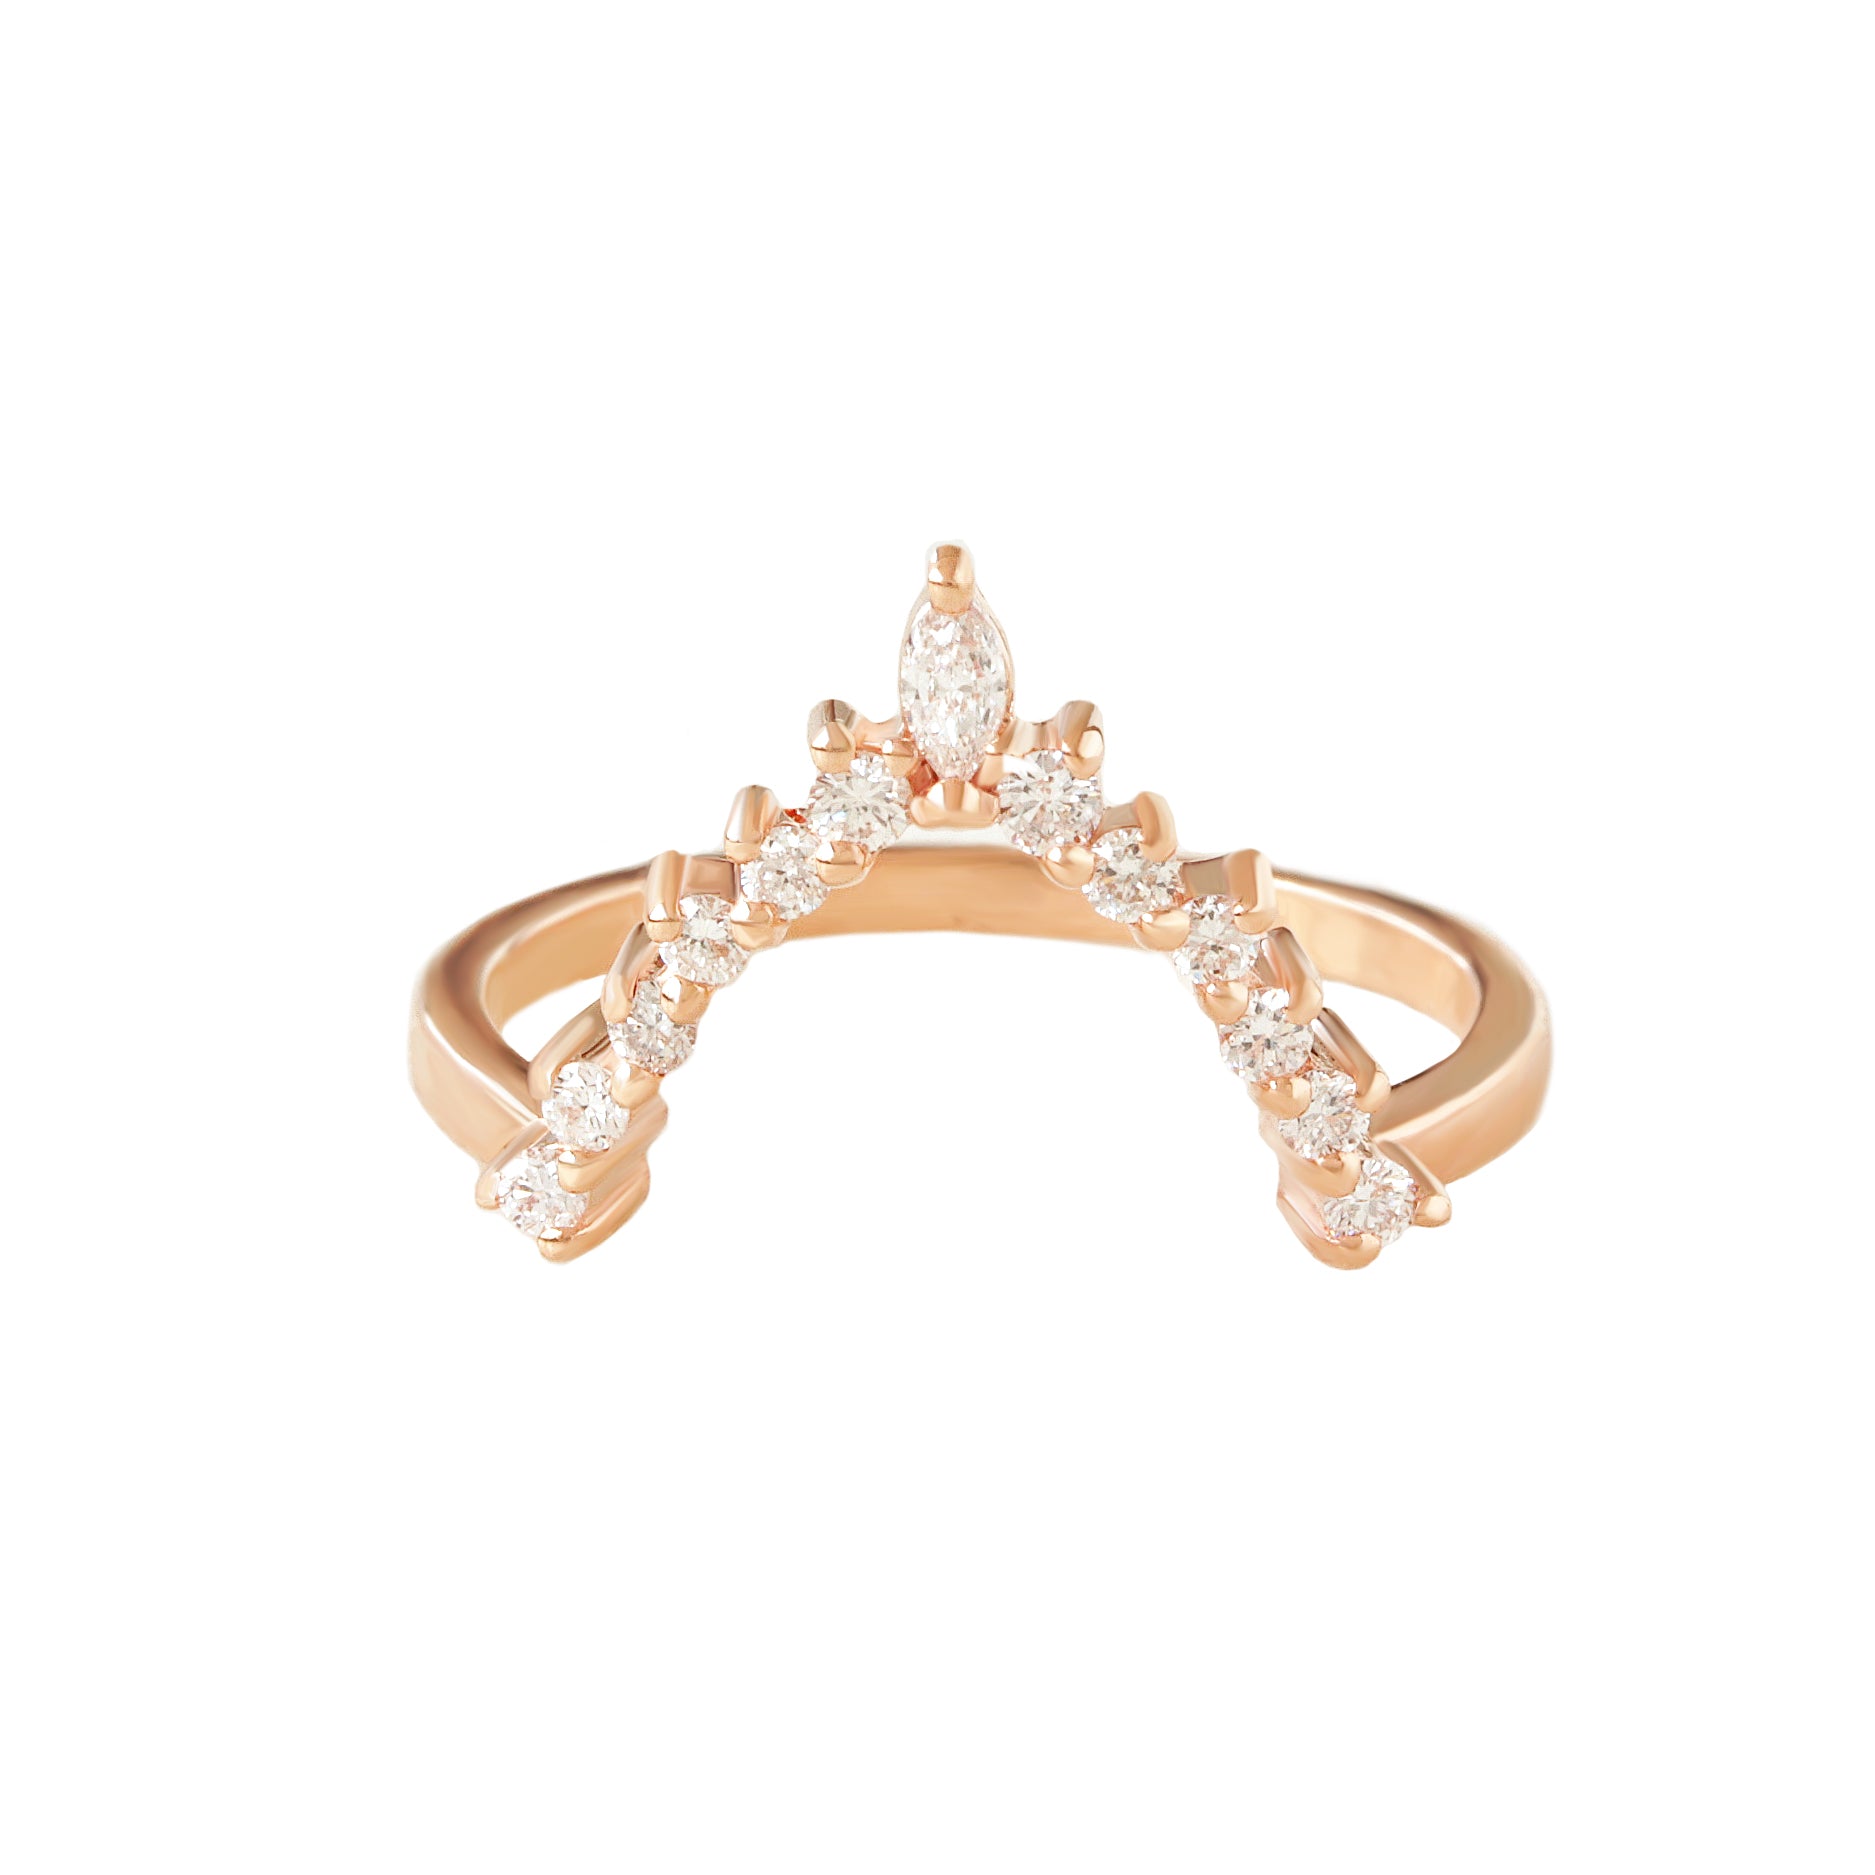 V Diamond Ring - Top Ring for the Ballerina ring set